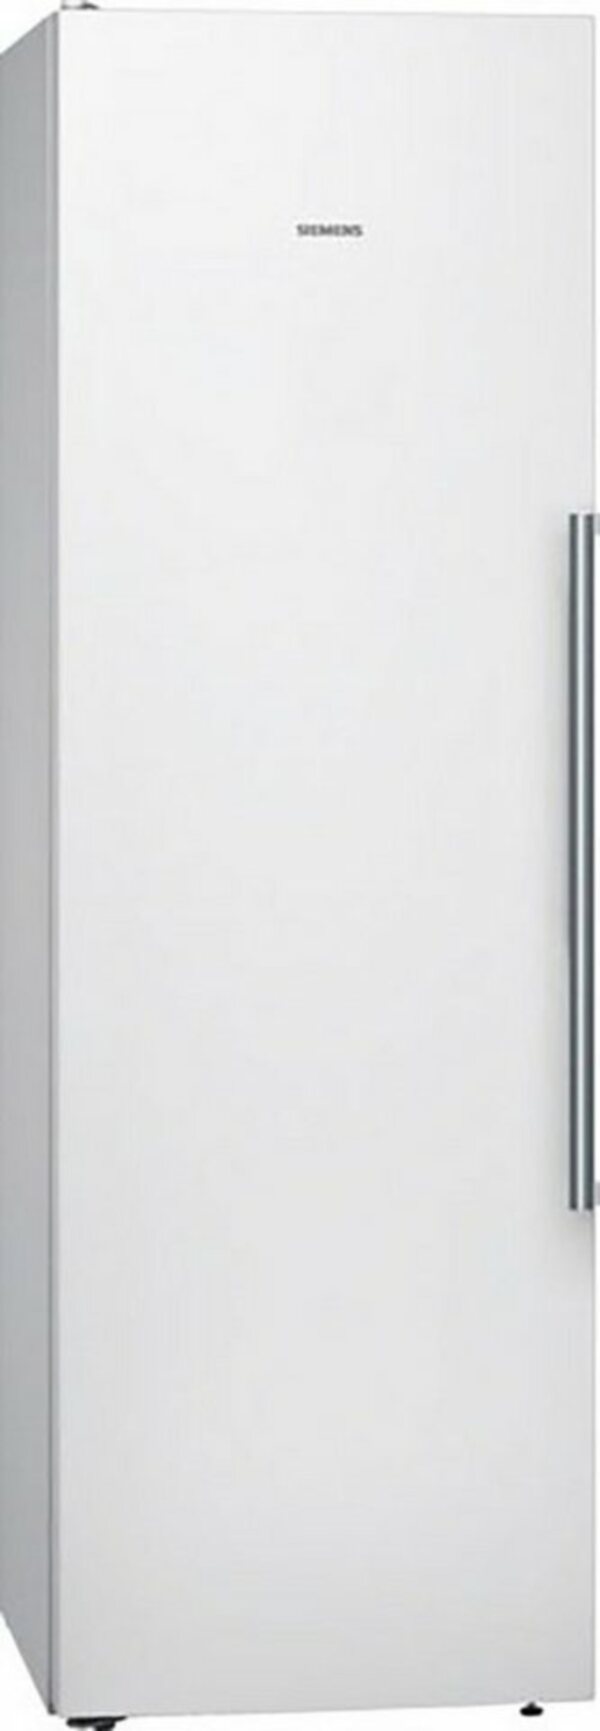 Bild 1 von SIEMENS Kühlschrank iQ500 KS36VAWEP, 186 cm hoch, 60 cm breit